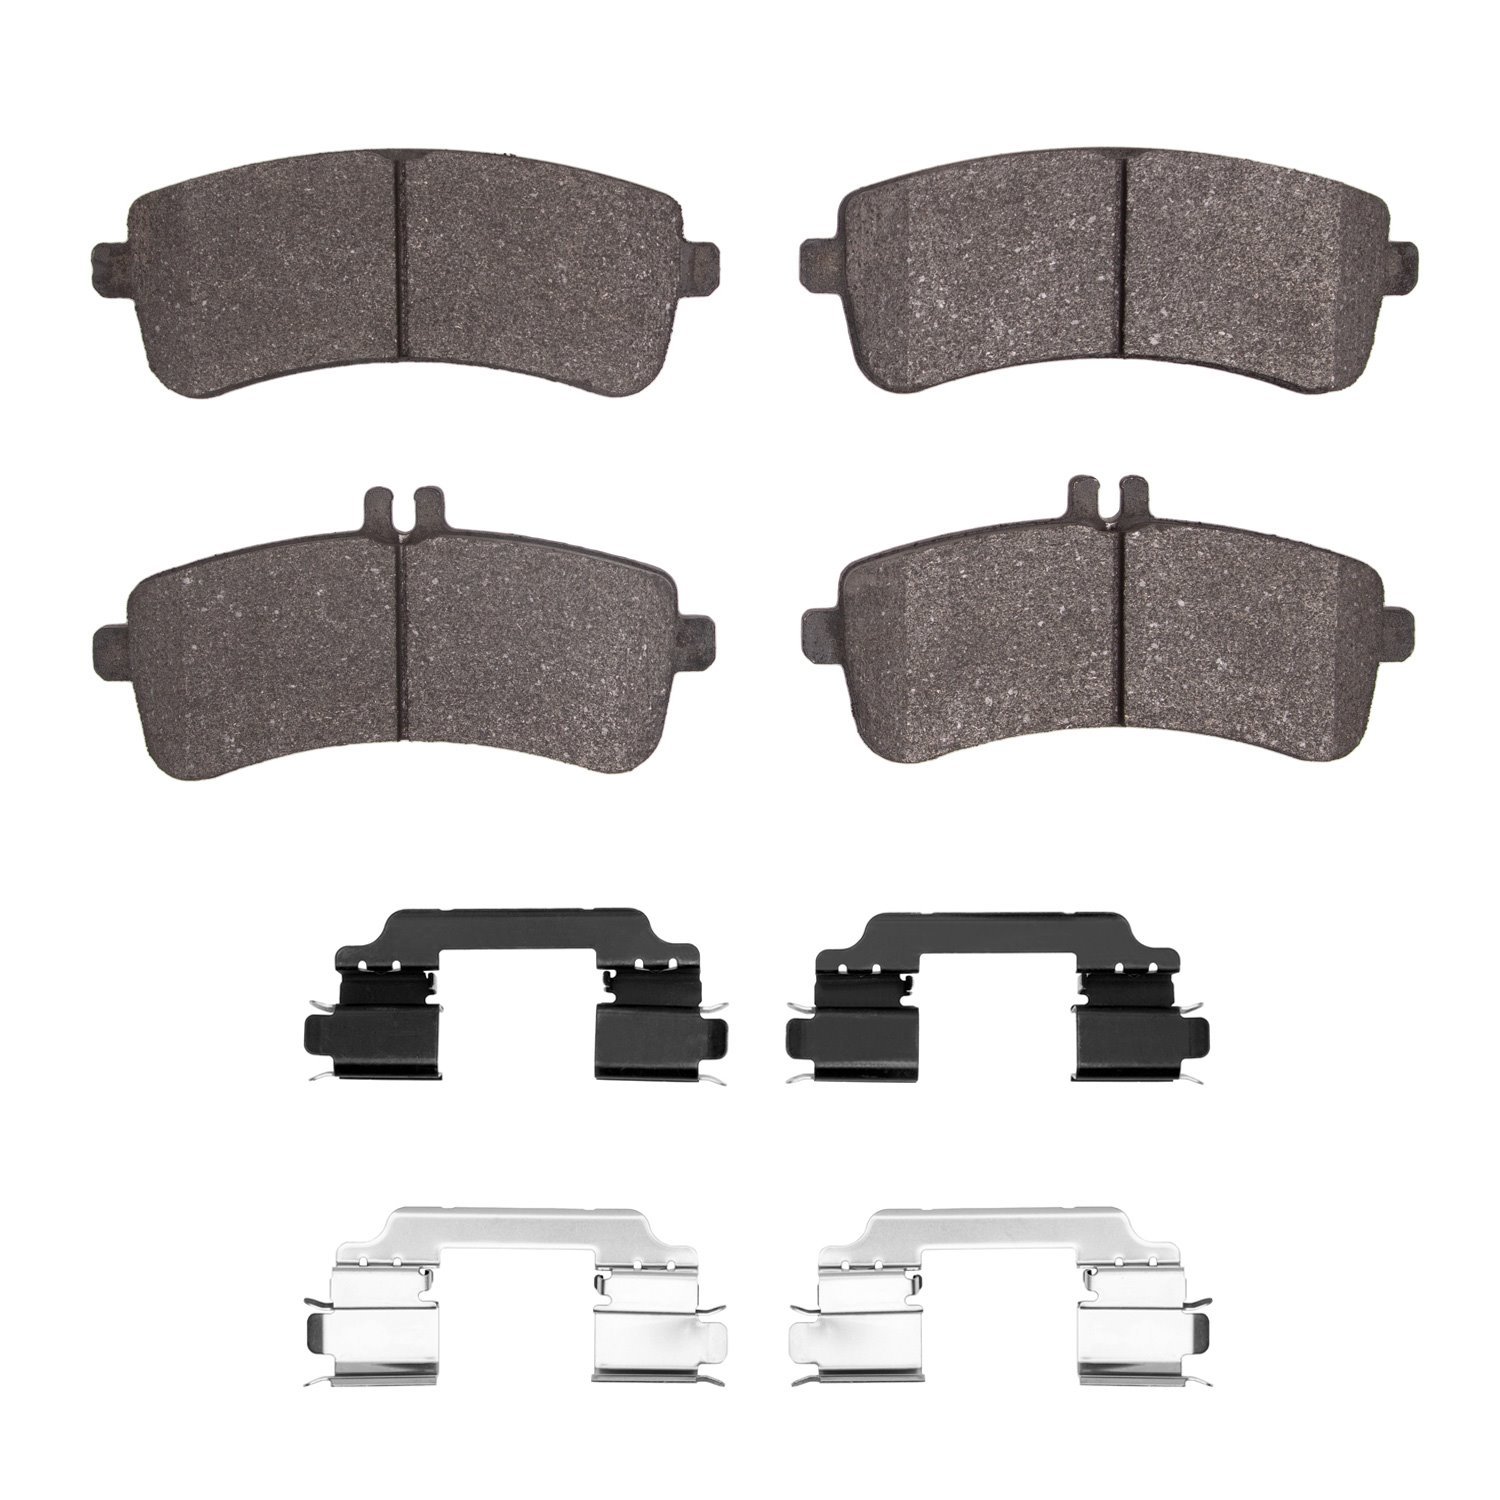 1311-1907-01 3000-Series Semi-Metallic Brake Pads & Hardware Kit, 2014-2021 Mercedes-Benz, Position: Rear